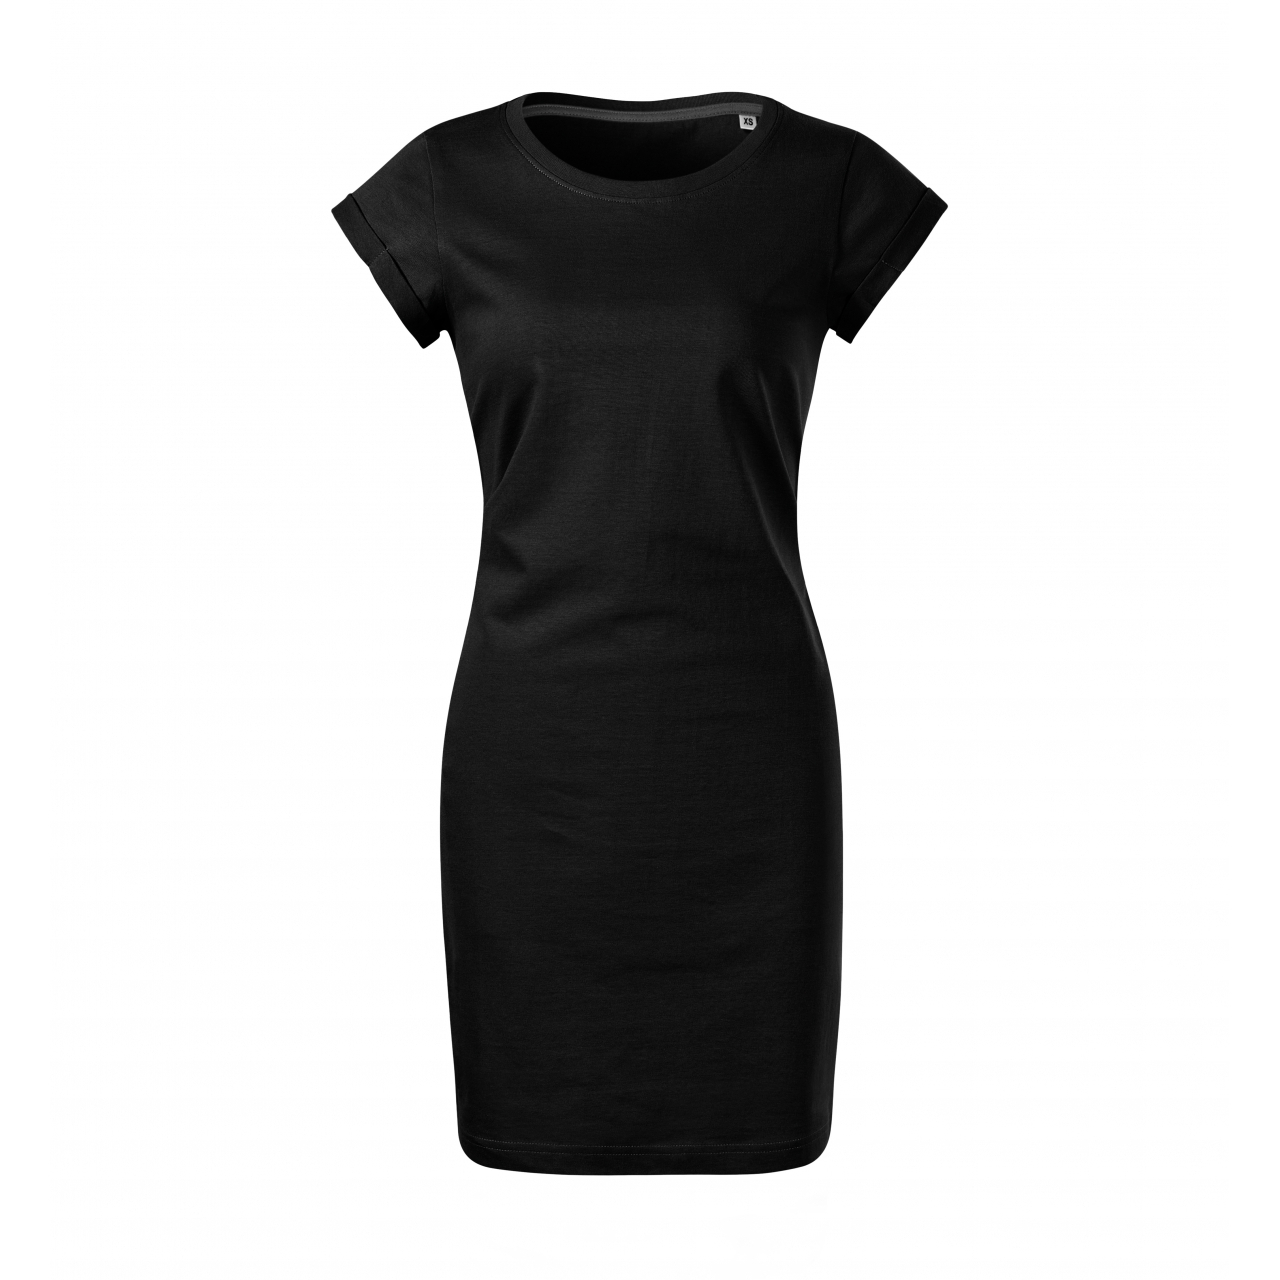 Šaty dámské Malfini Freedom - černé, XS